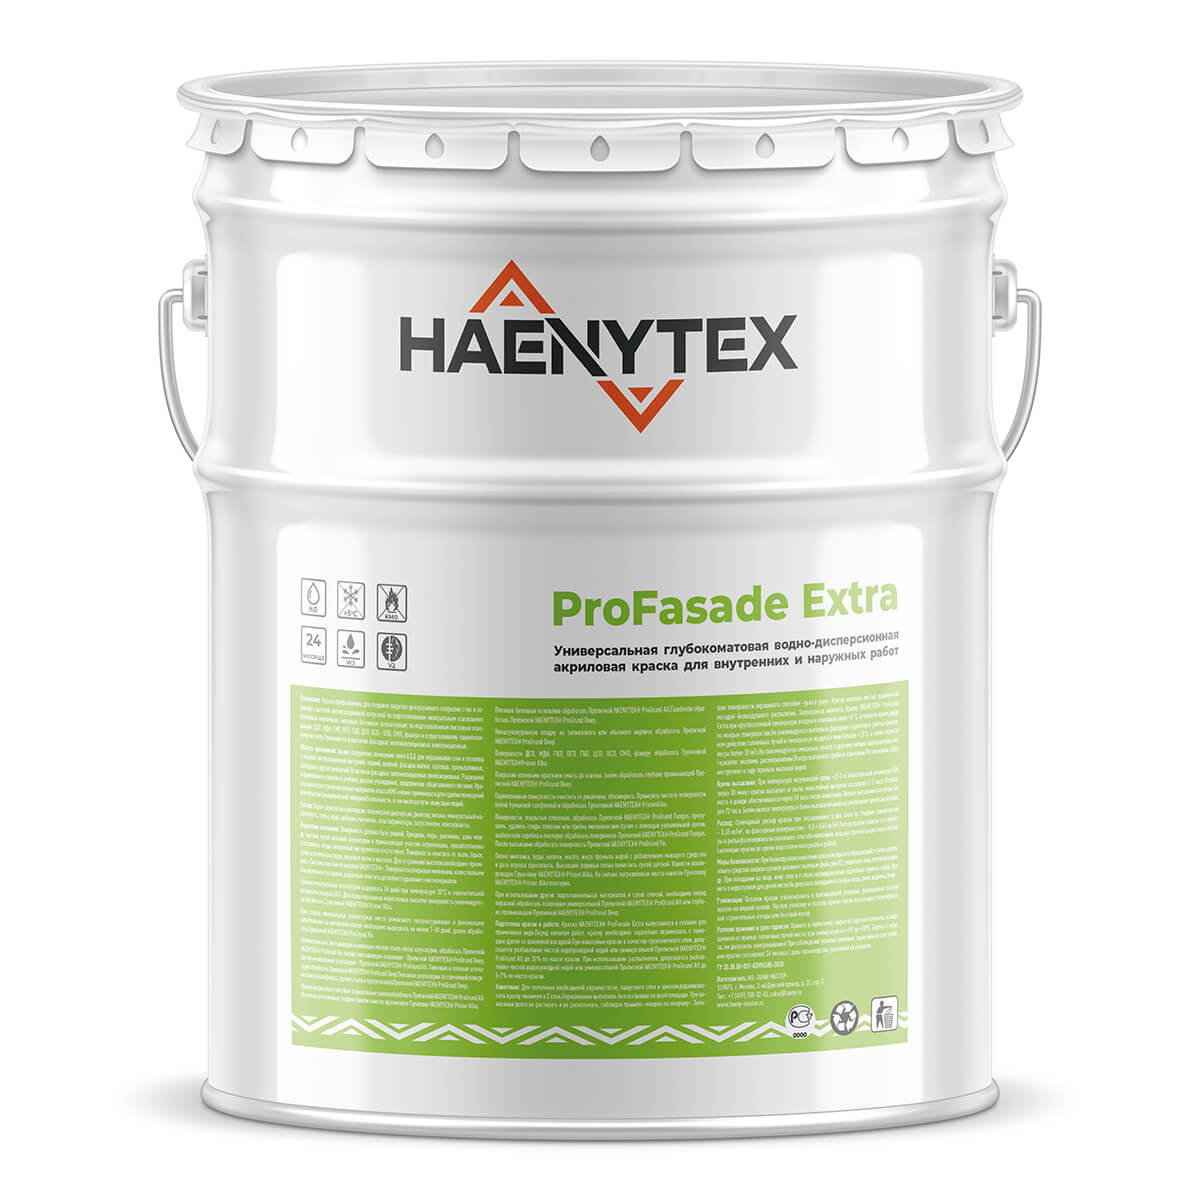 HAENYTEX® ProFasade Extra